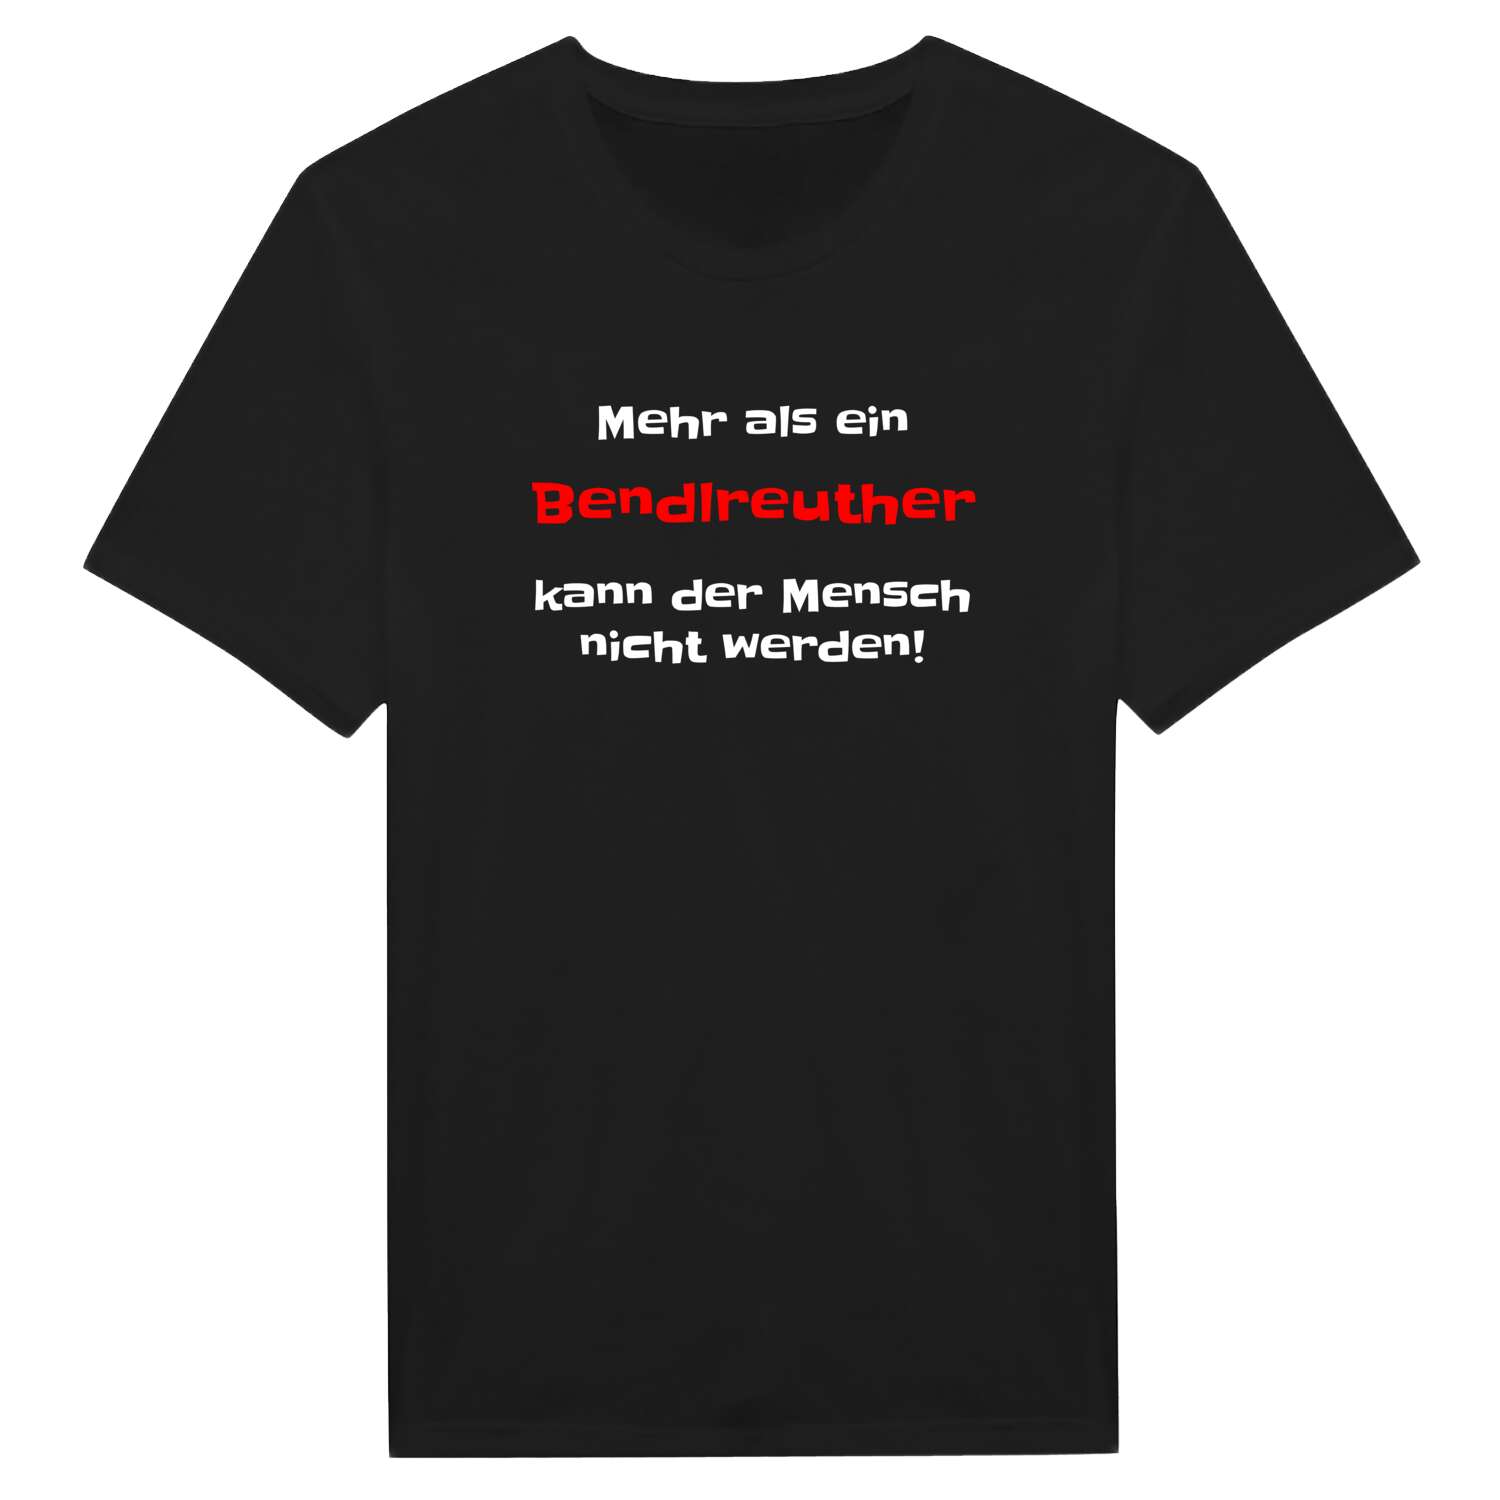 Bendlreuth T-Shirt »Mehr als ein«